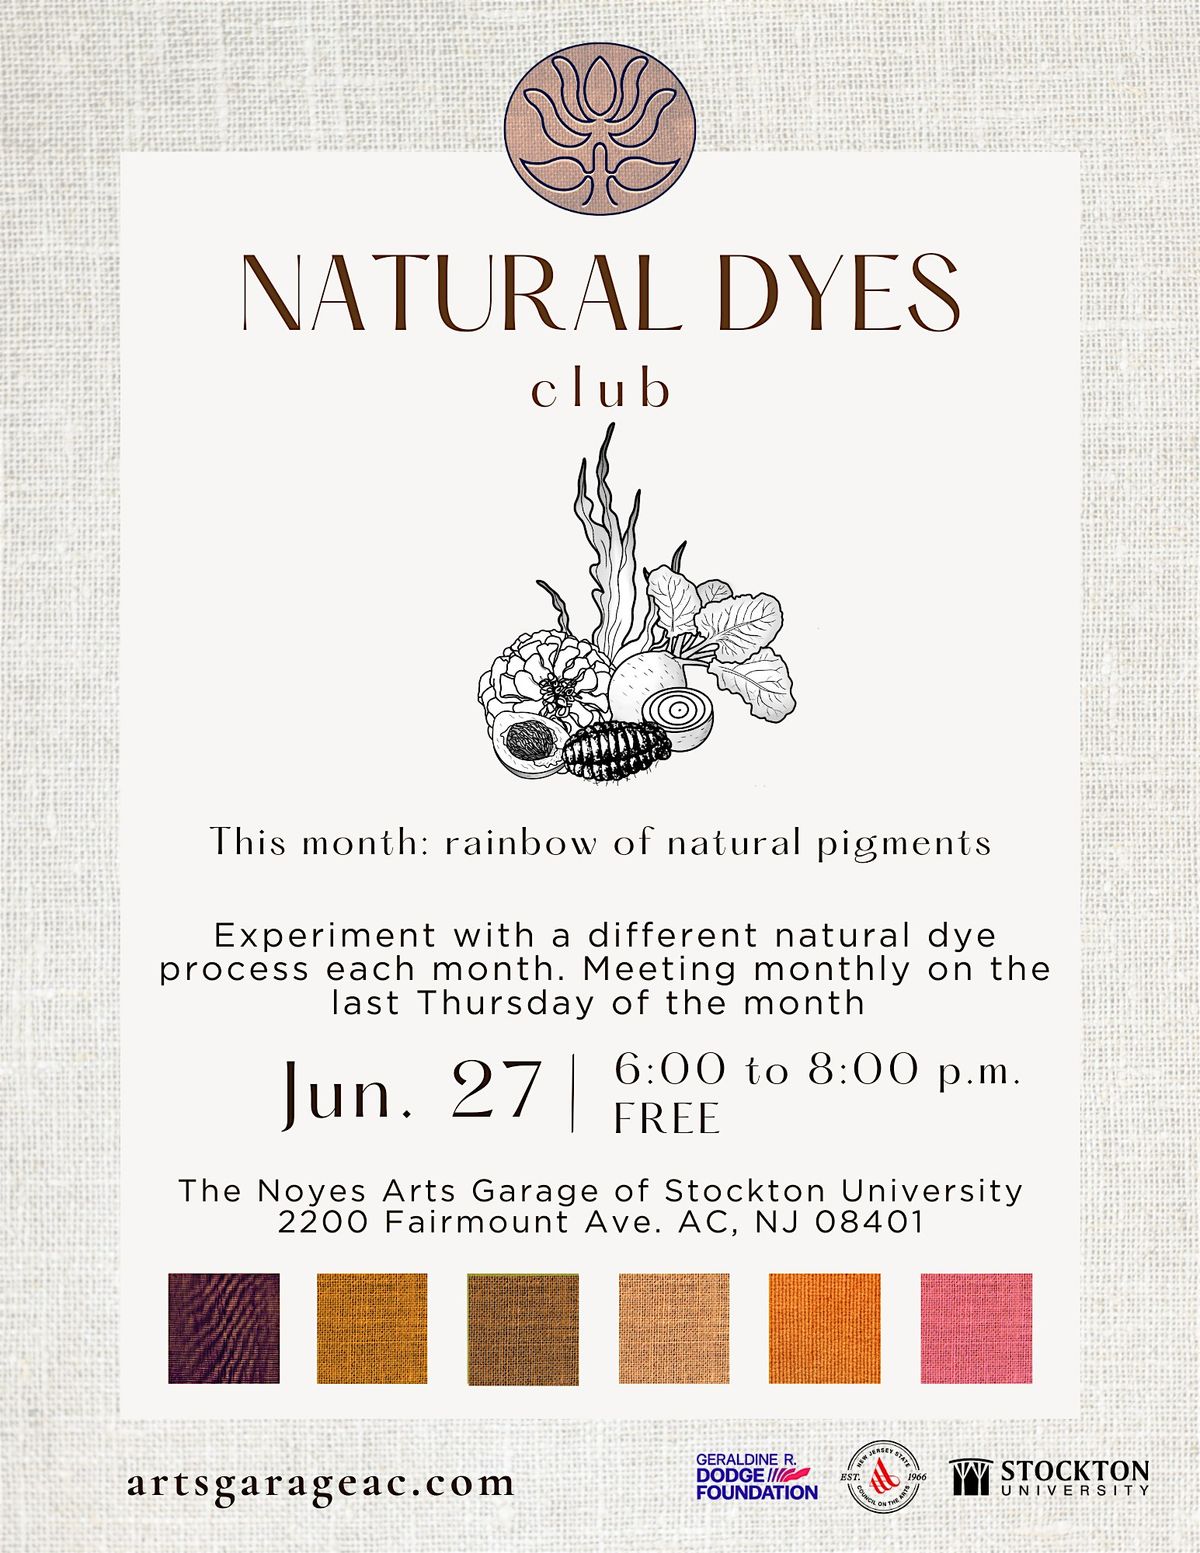 Natural Dyes Club: Natural Rainbow